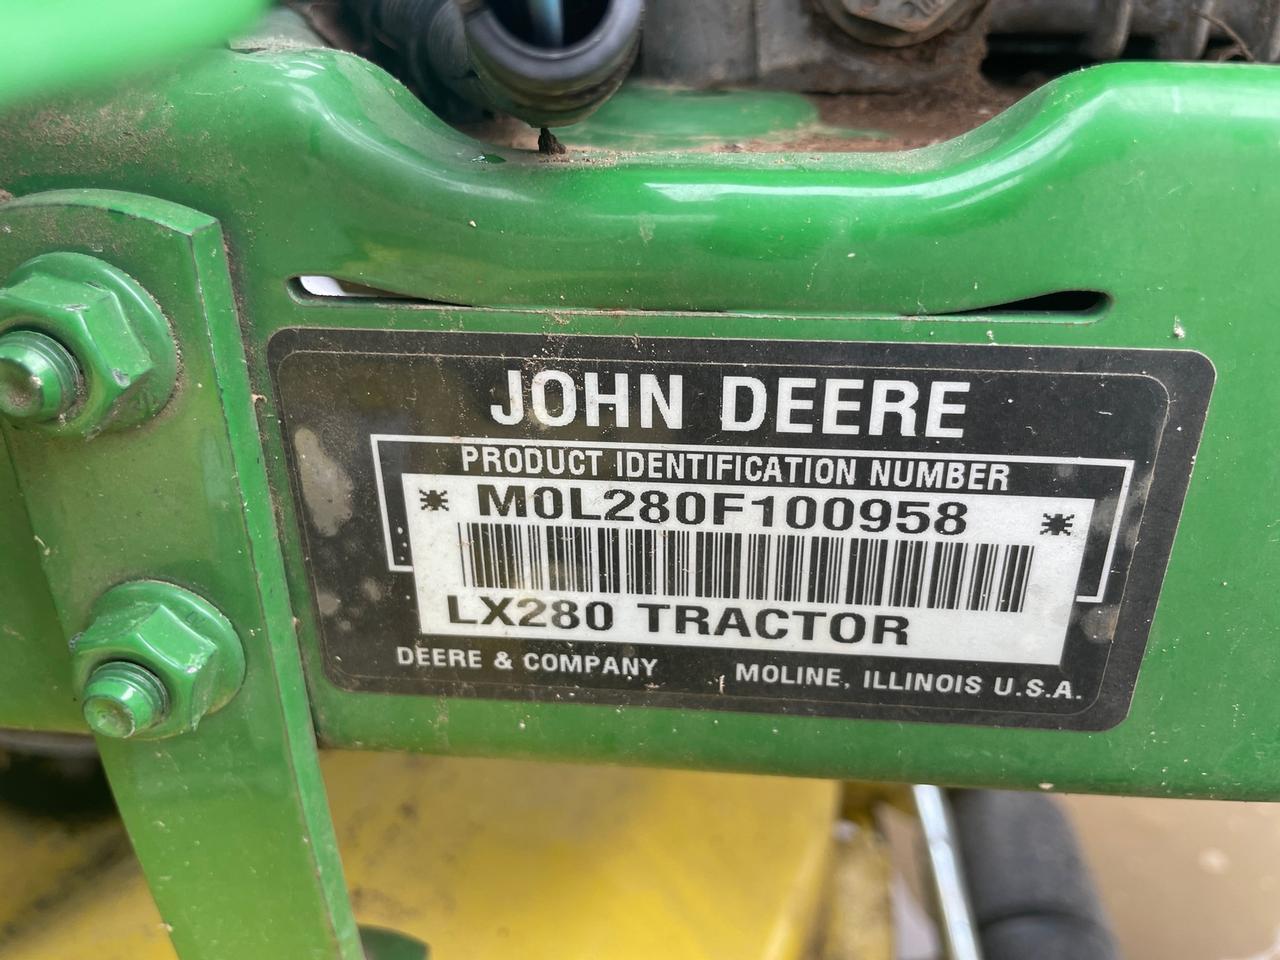 John Deere LX280 Lawn Tractor